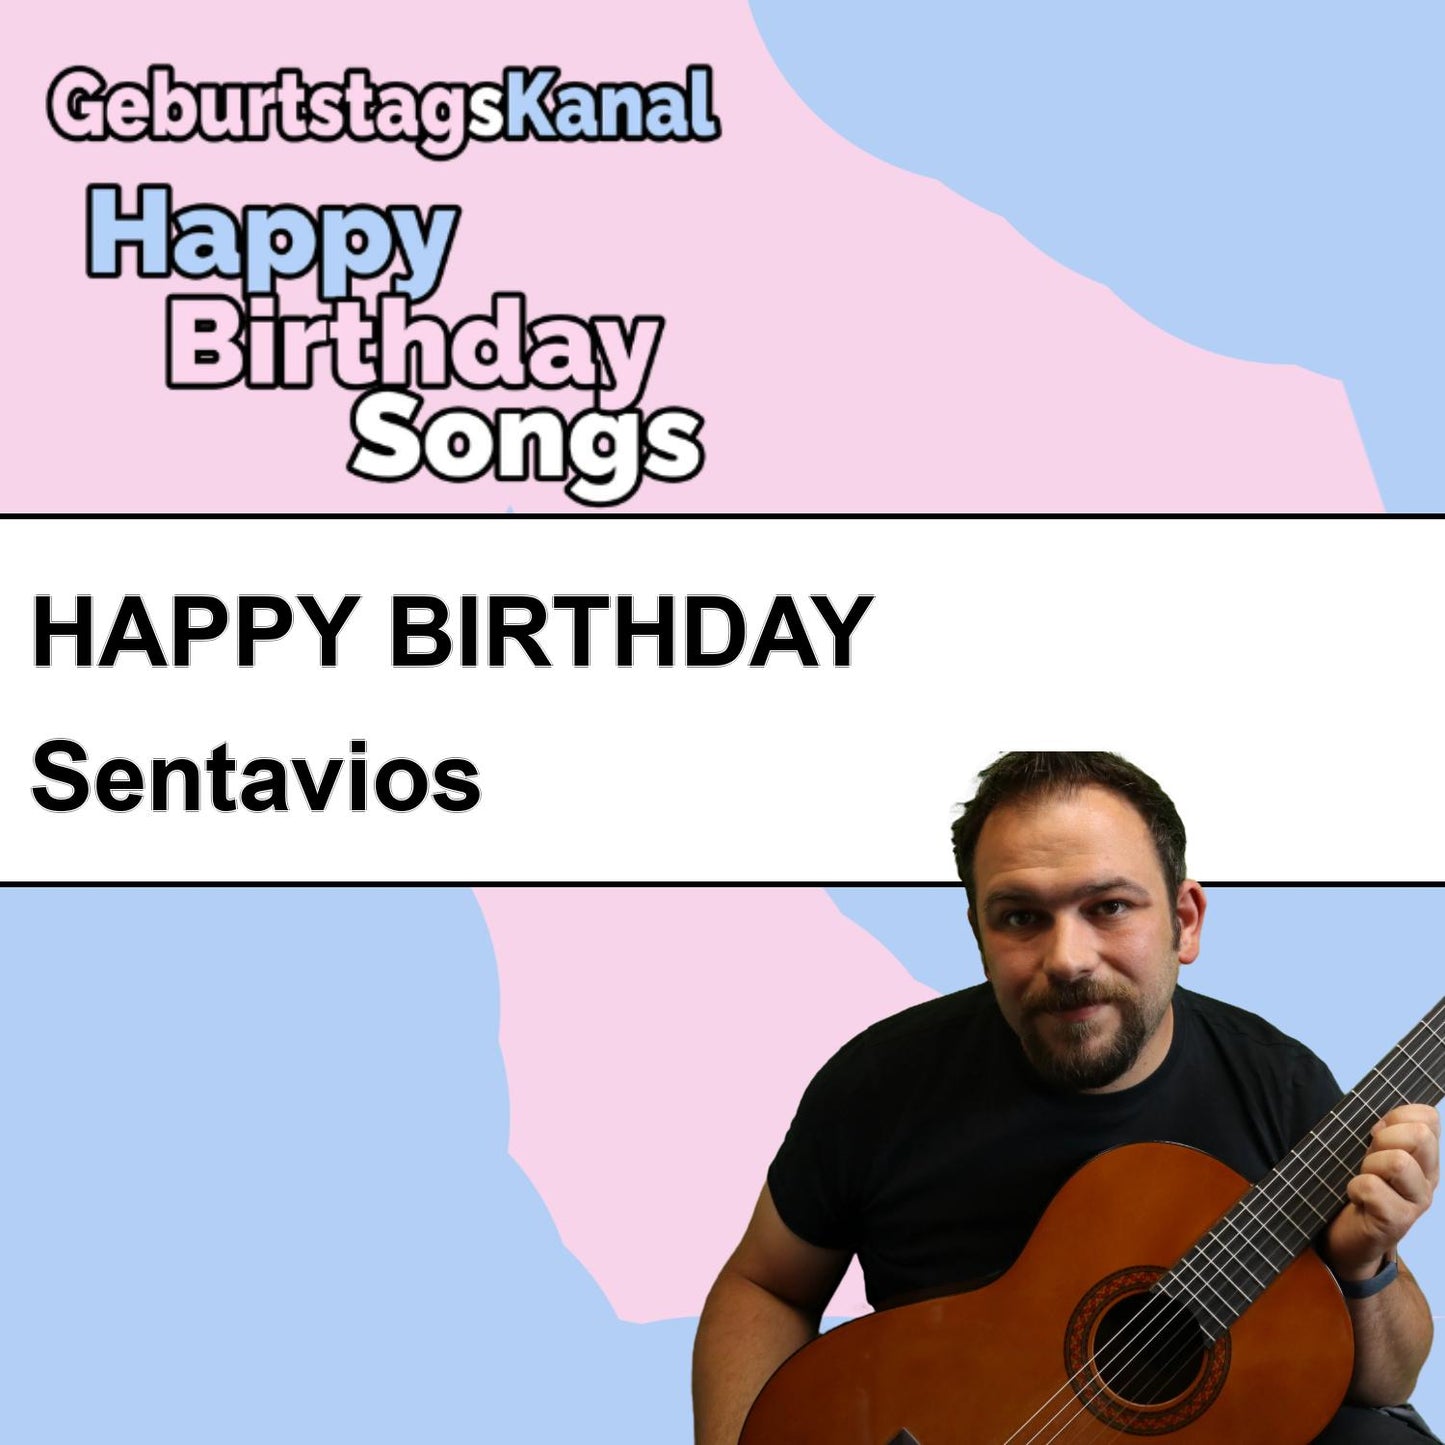 Produktbild Happy Birthday to you Sentavios mit Wunschgrußbotschaft